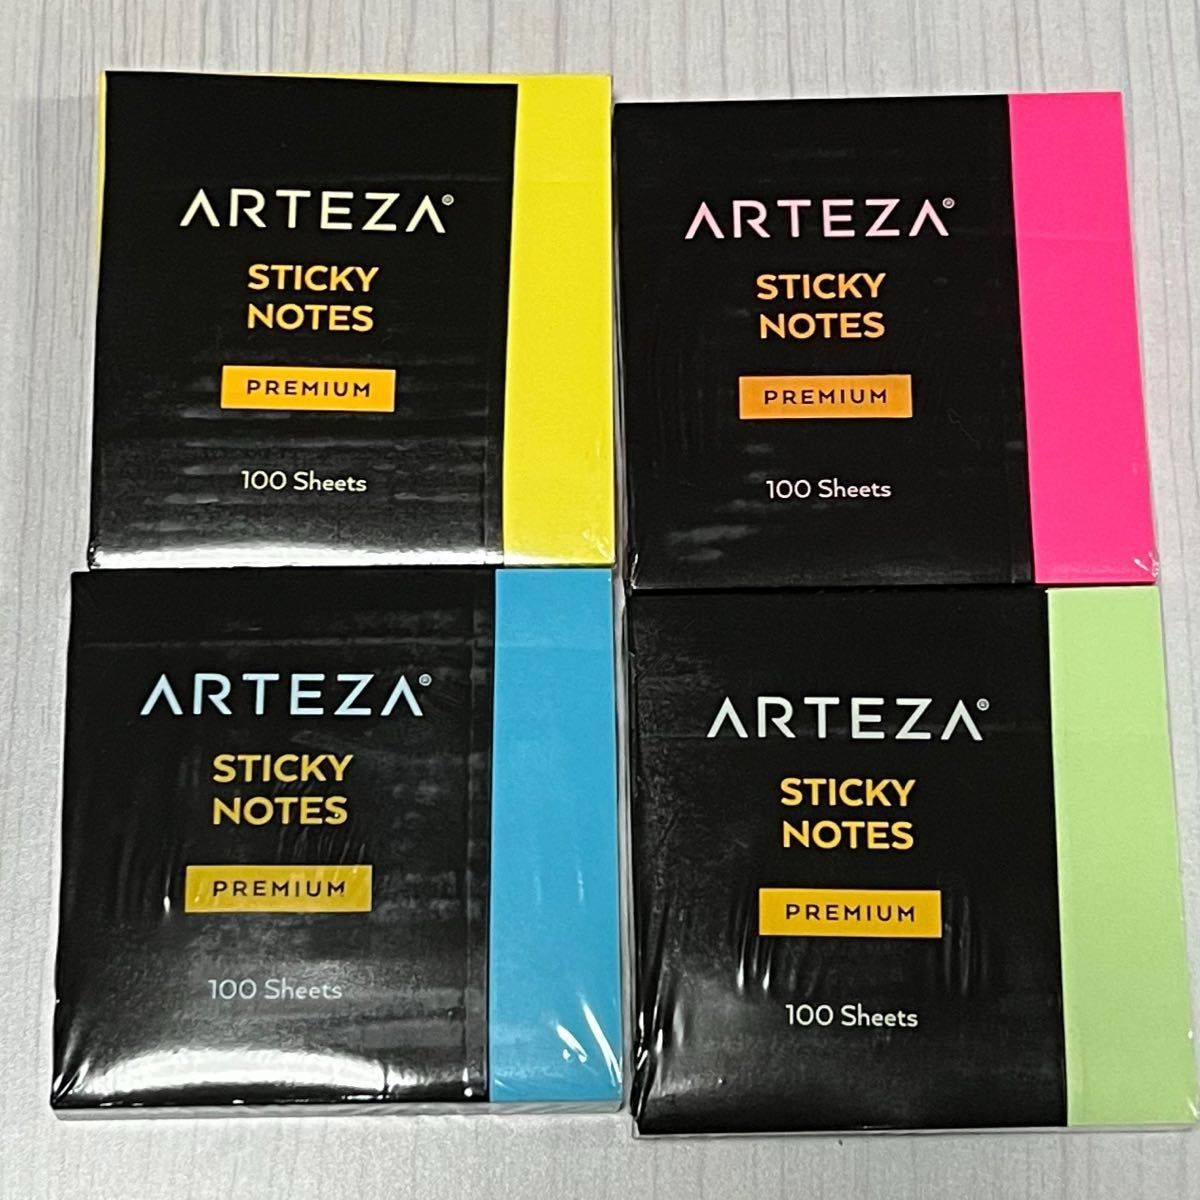 ARTEZA 3x3インチ付箋、48パッド、1パッドあたり100枚、バルクパック、アソートカラー、再接着可能、きれいに剥がせる、